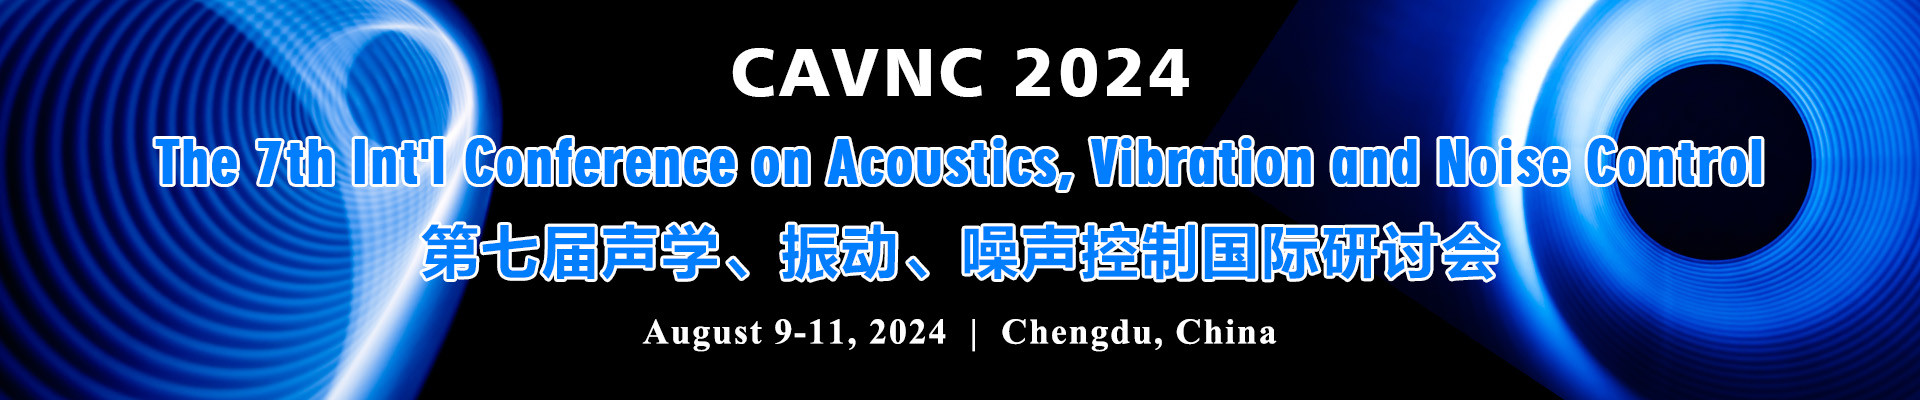 第七届声学、振动、噪声控制国际研讨会CAVNC 2024